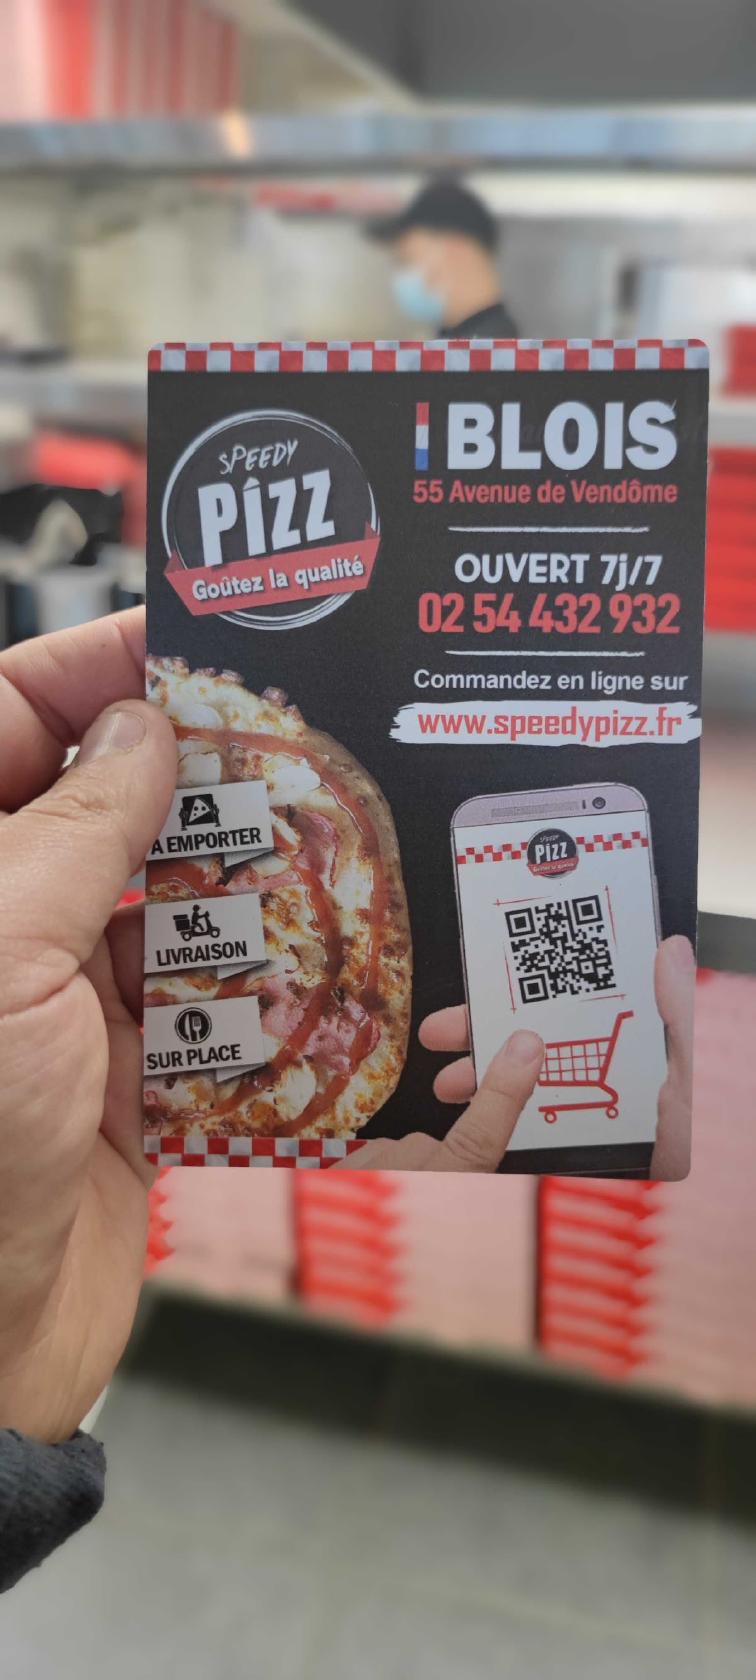 Speedy PIZZ Vendôme : Commandez vos Pizzas en ligne